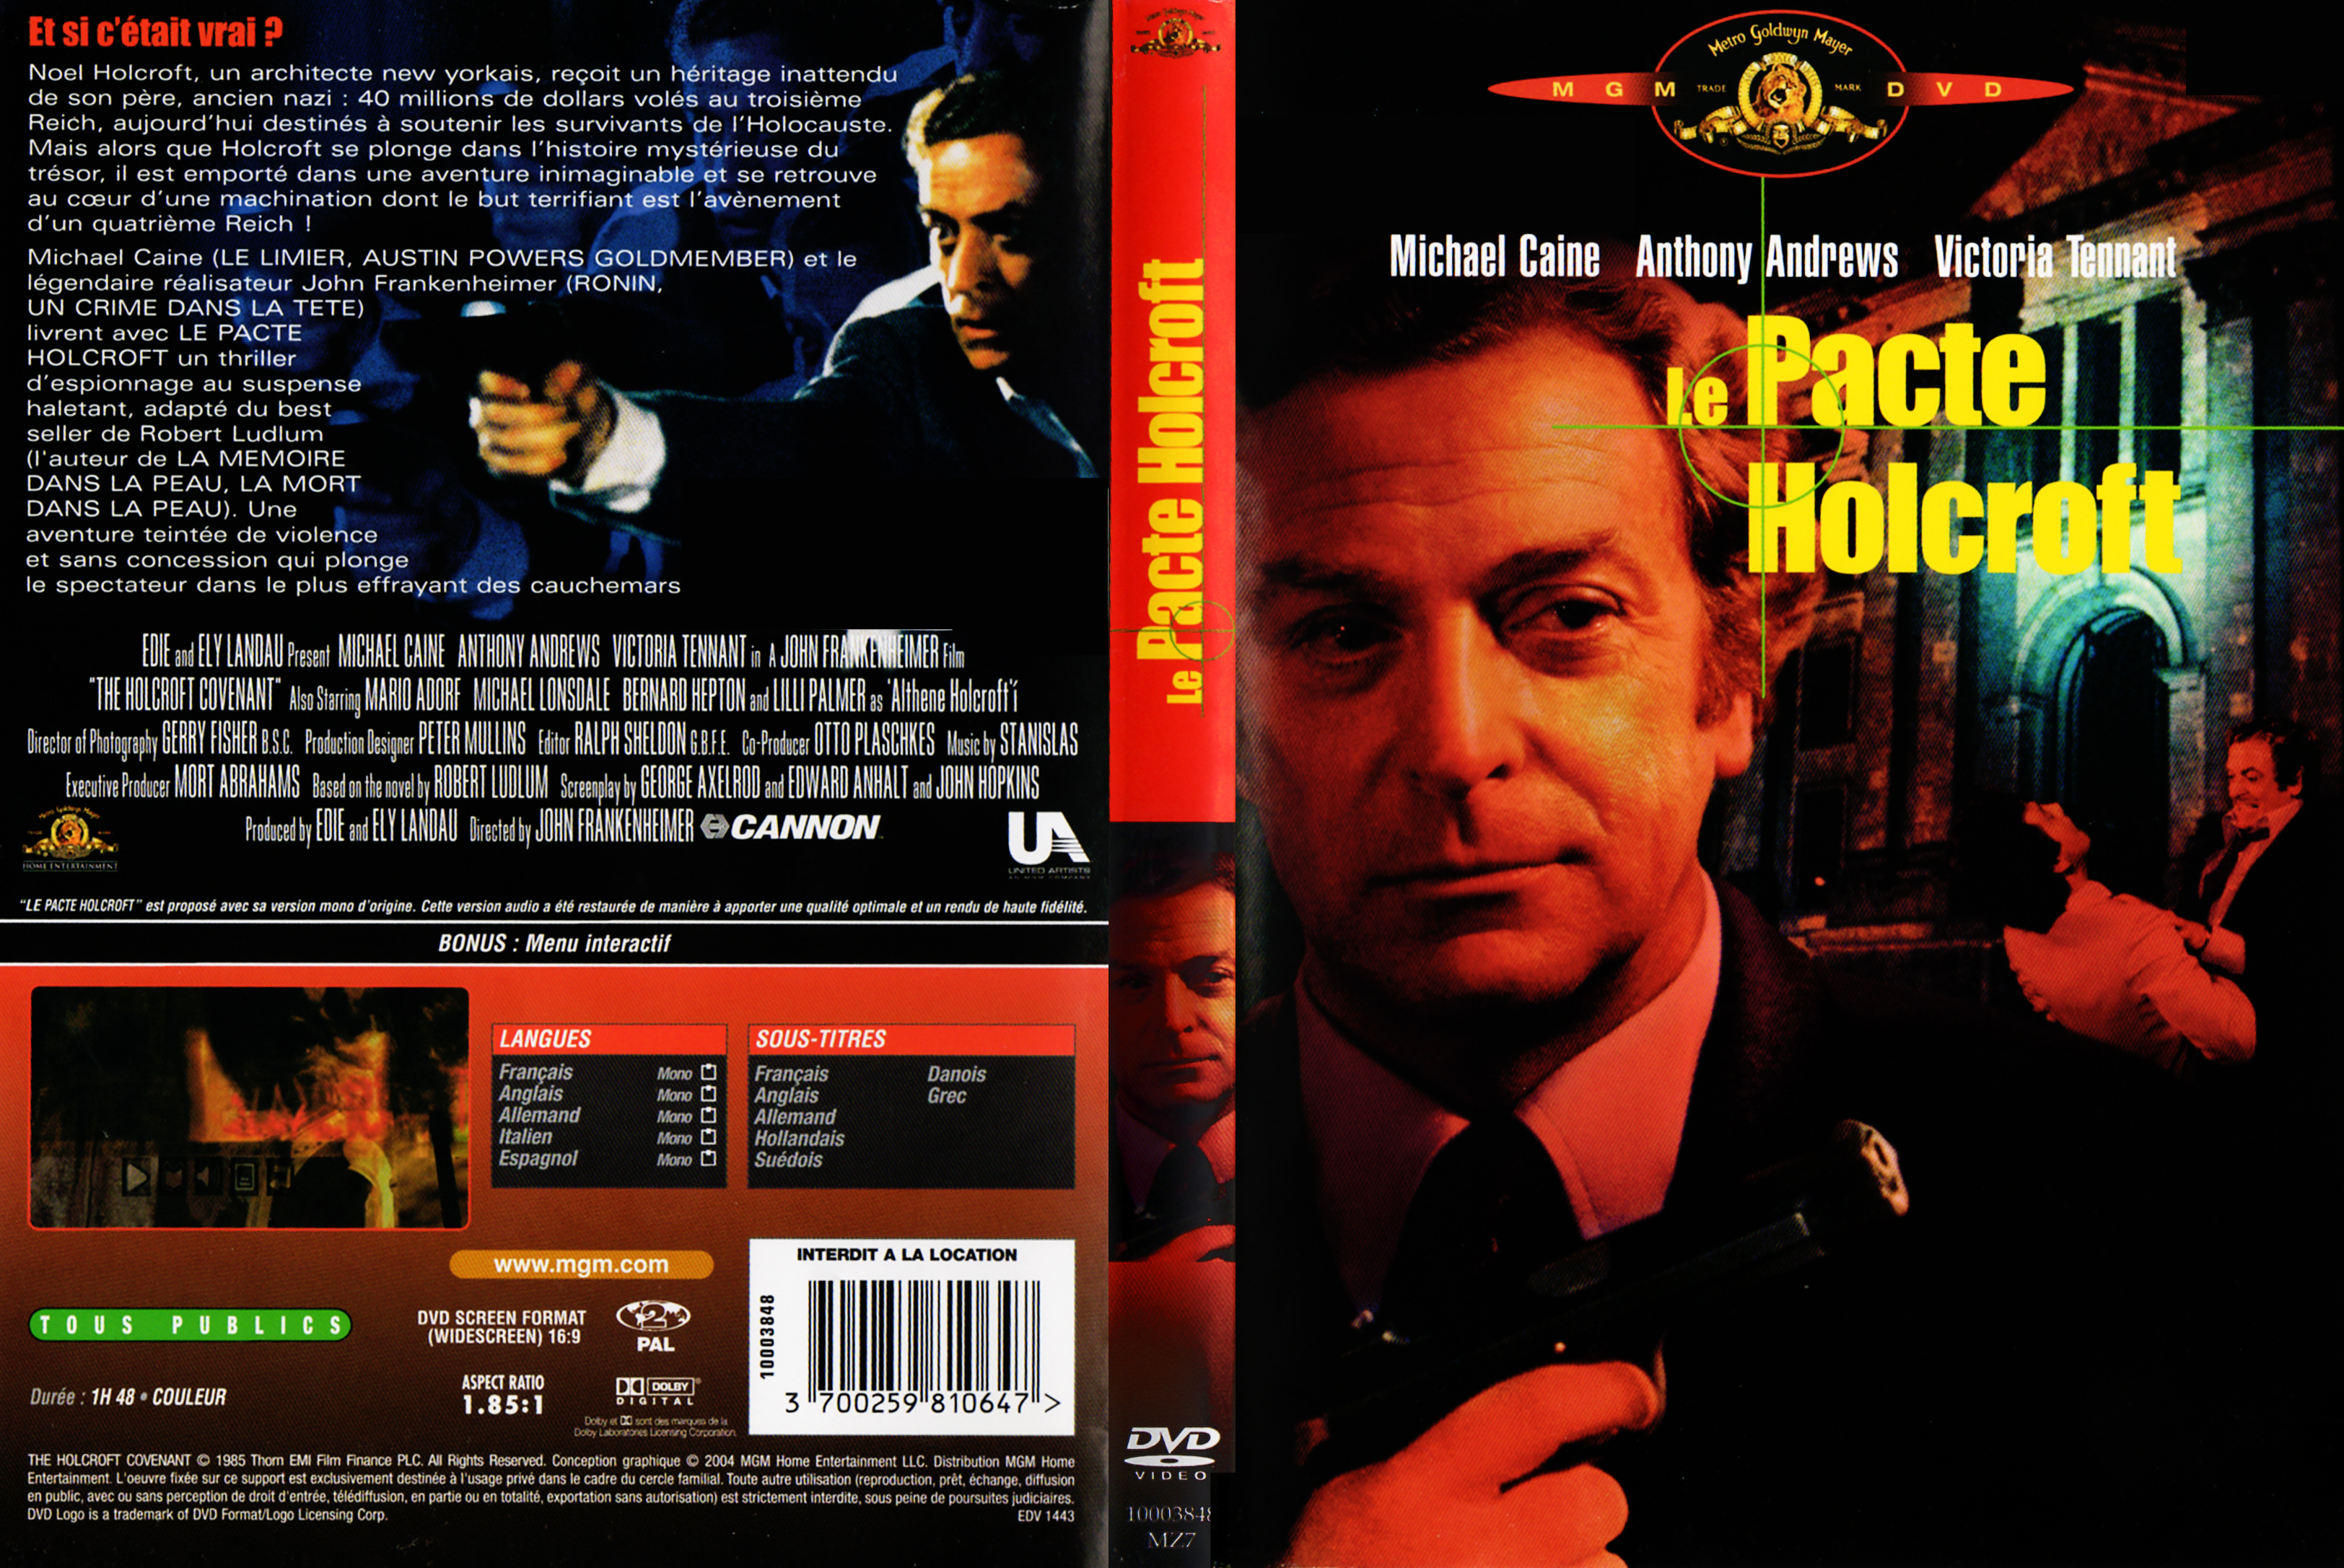 Jaquette DVD Le pacte Holcroft